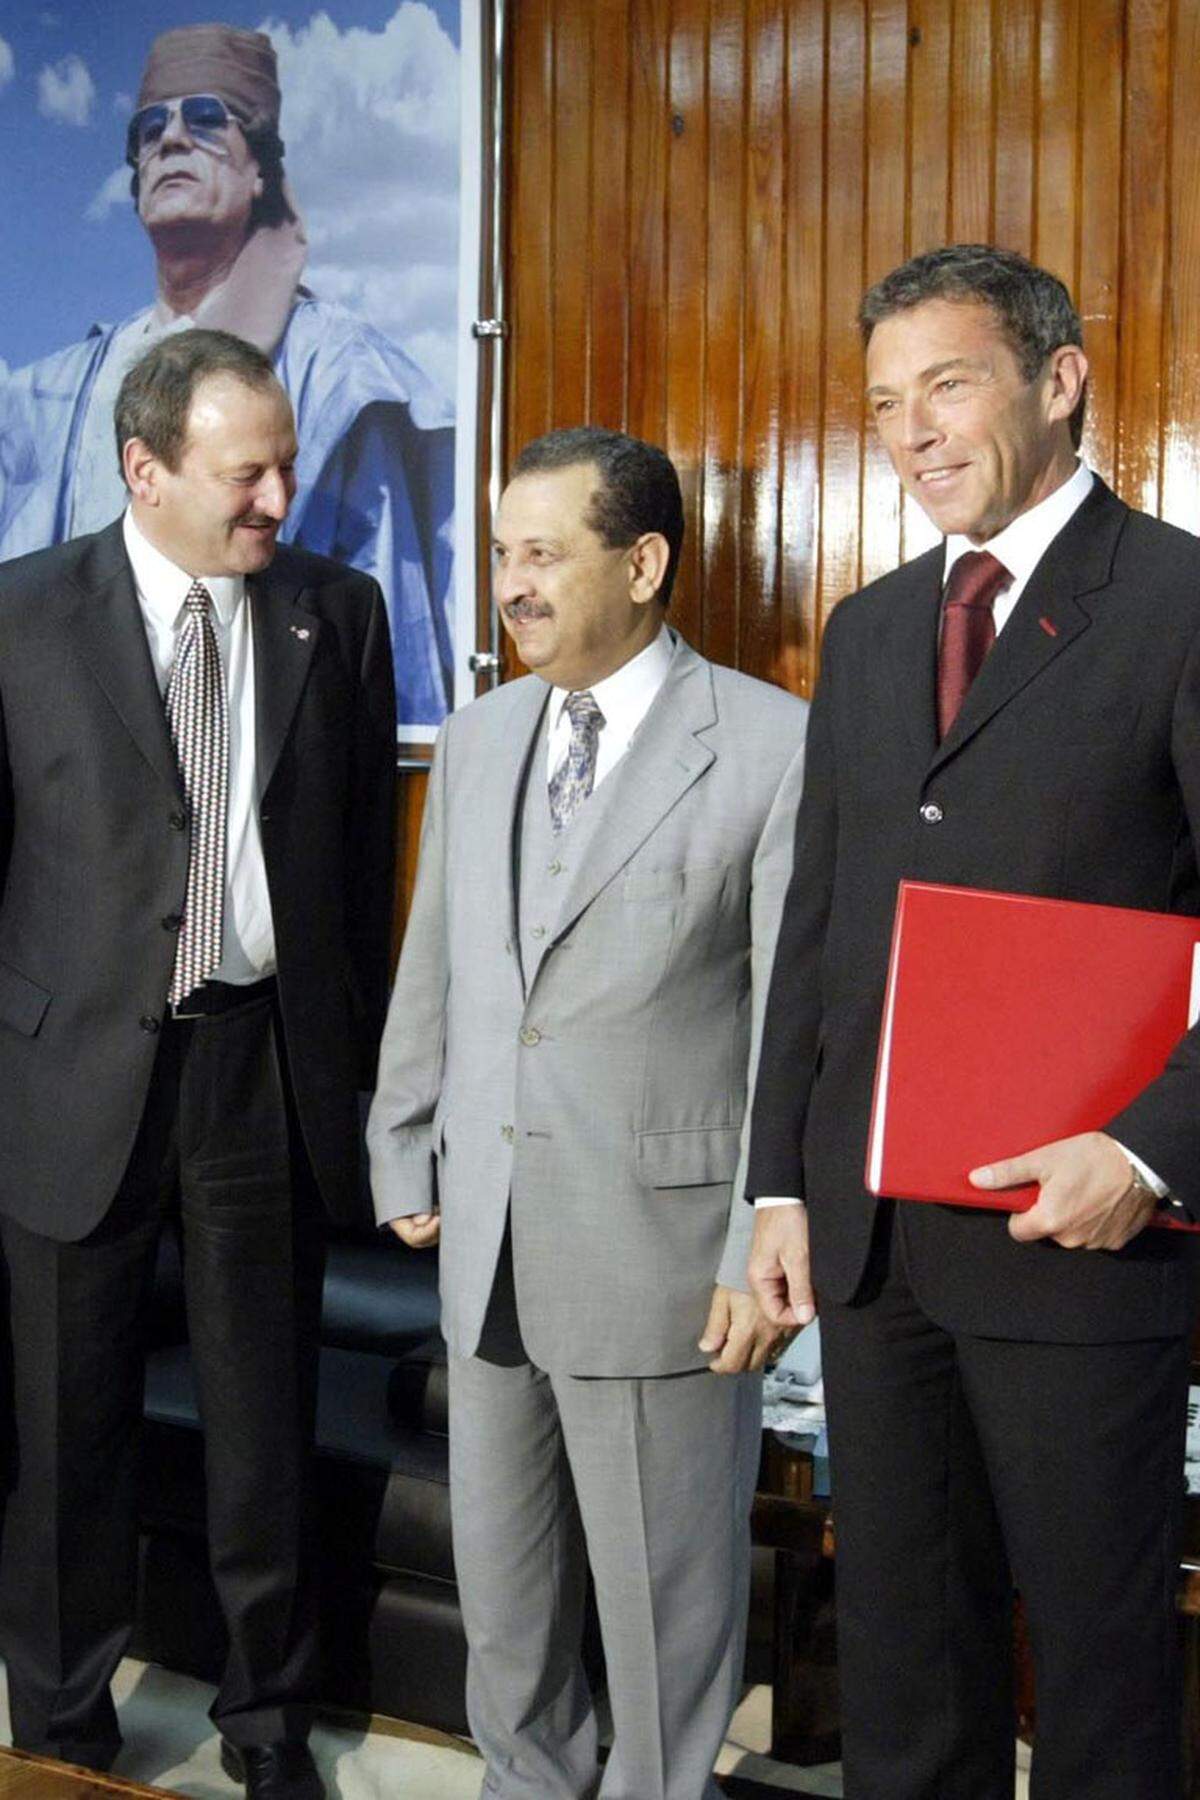 Der am Sonntag tot in der Neuen Donau aufgefundene libysche Ex-Premier Shukri Ghanem ist mit Wien eng verbunden gewesen. Der ehemalige Gaddafi-Gefolgsmann war zuletzt in der Donaustadt (22. Bezirk) wohnhaft. (Bild: Ghanem mit Hubert Gorbach und Jörg Haider 2004 in Tripolis)